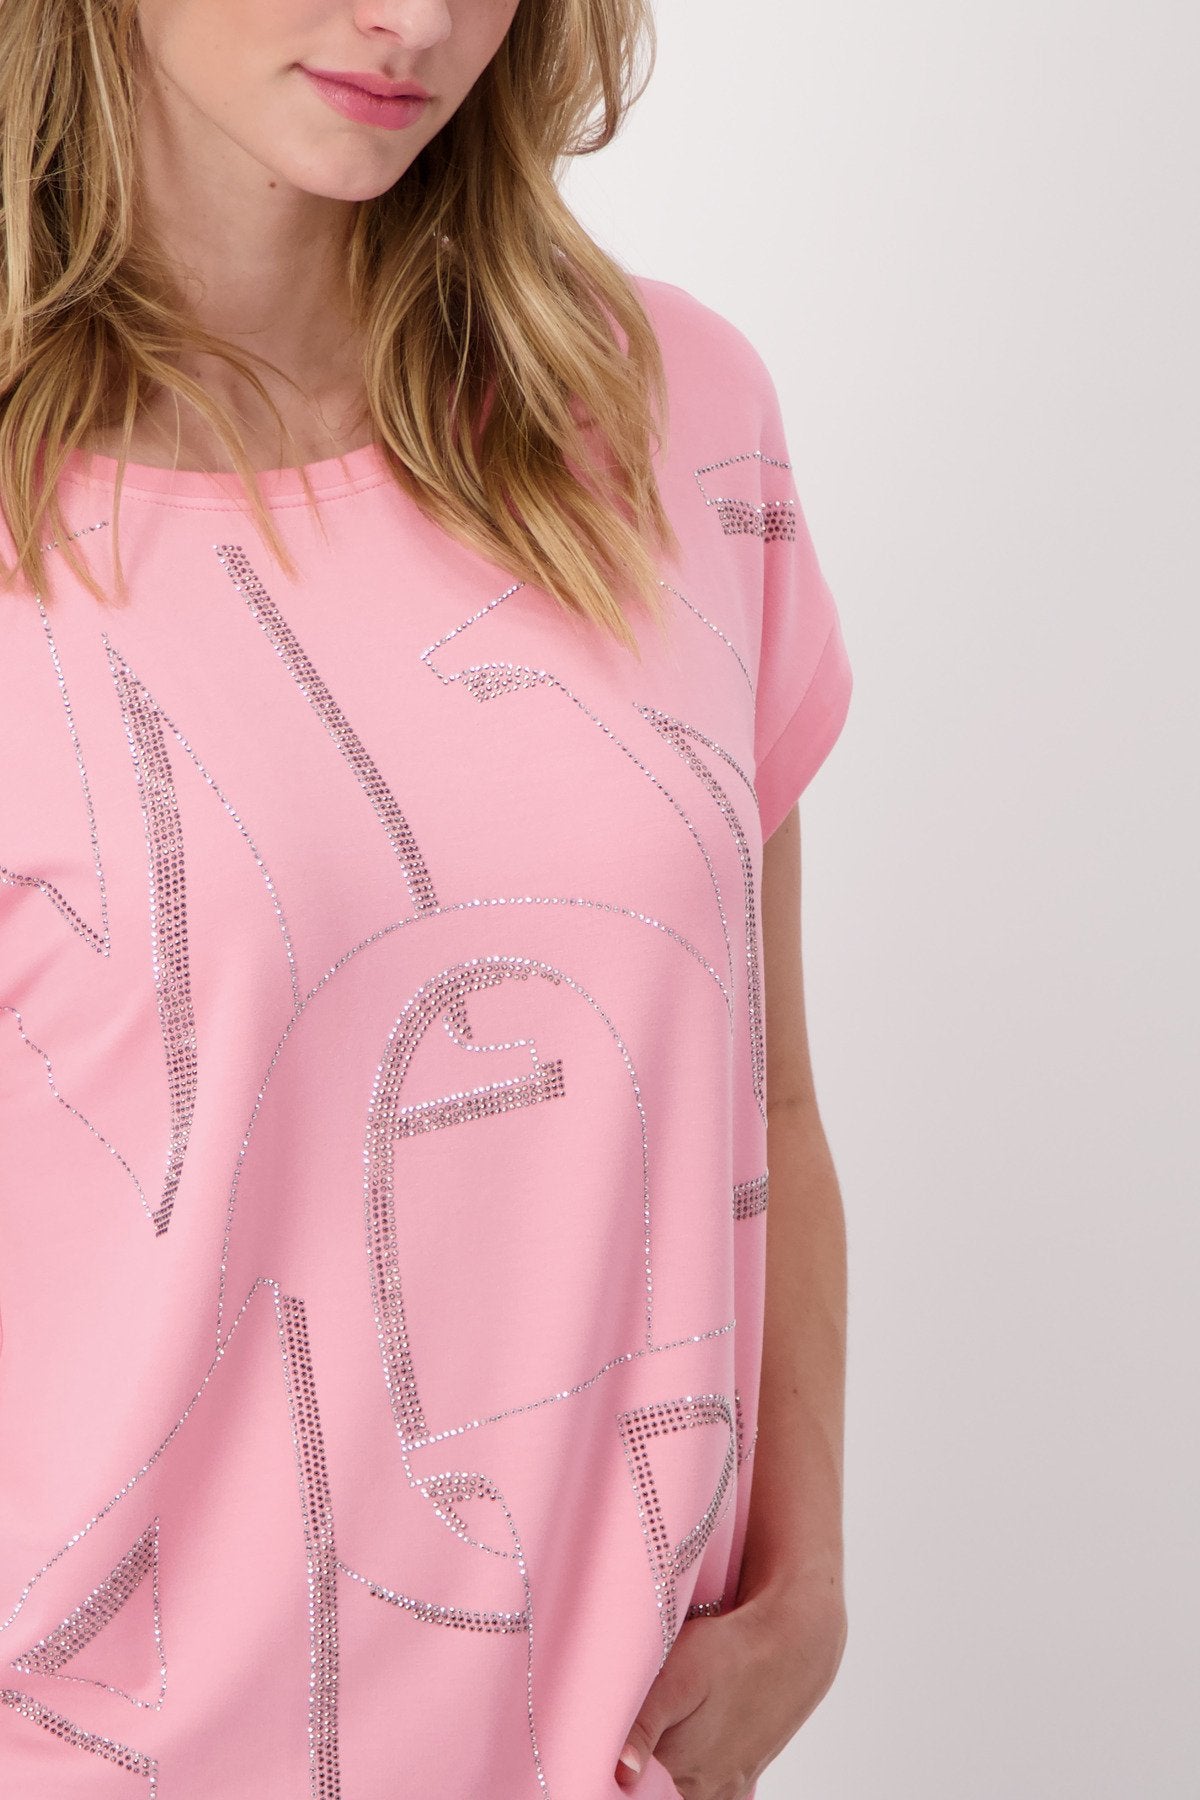 T-Shirt (Pink Smoothie)